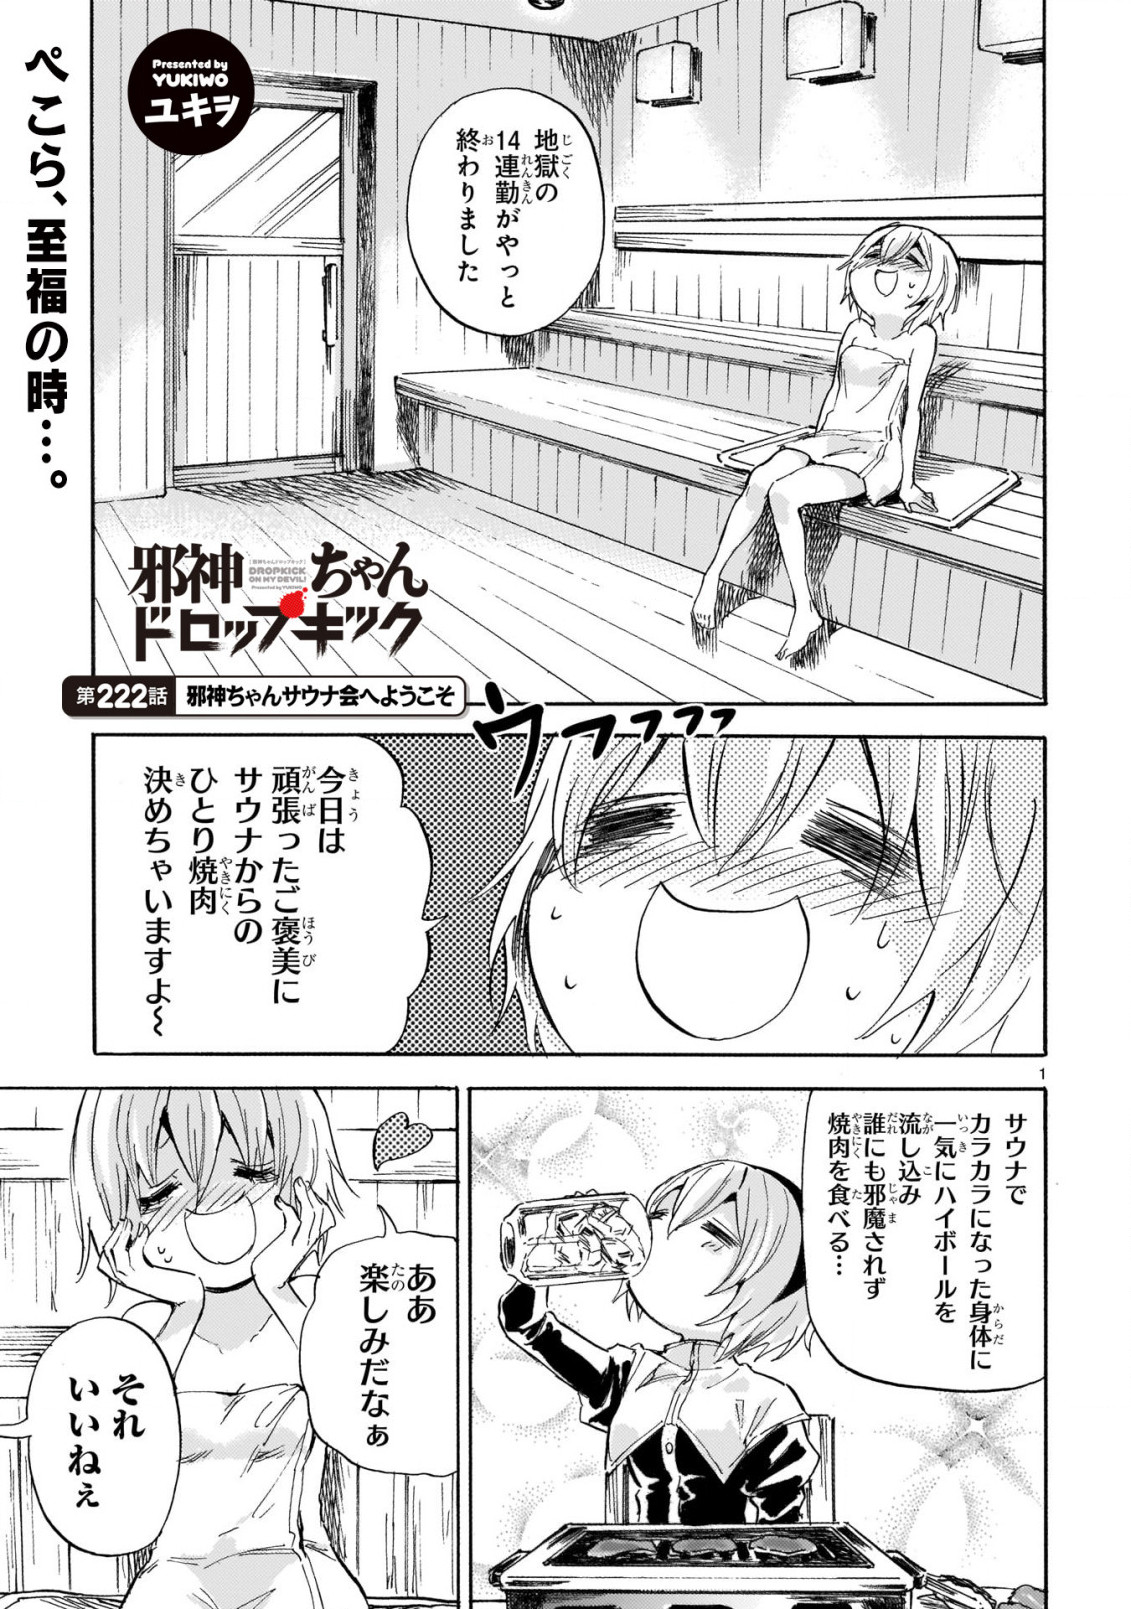 Jashin-chan Dropkick - Chapter 222 - Page 1